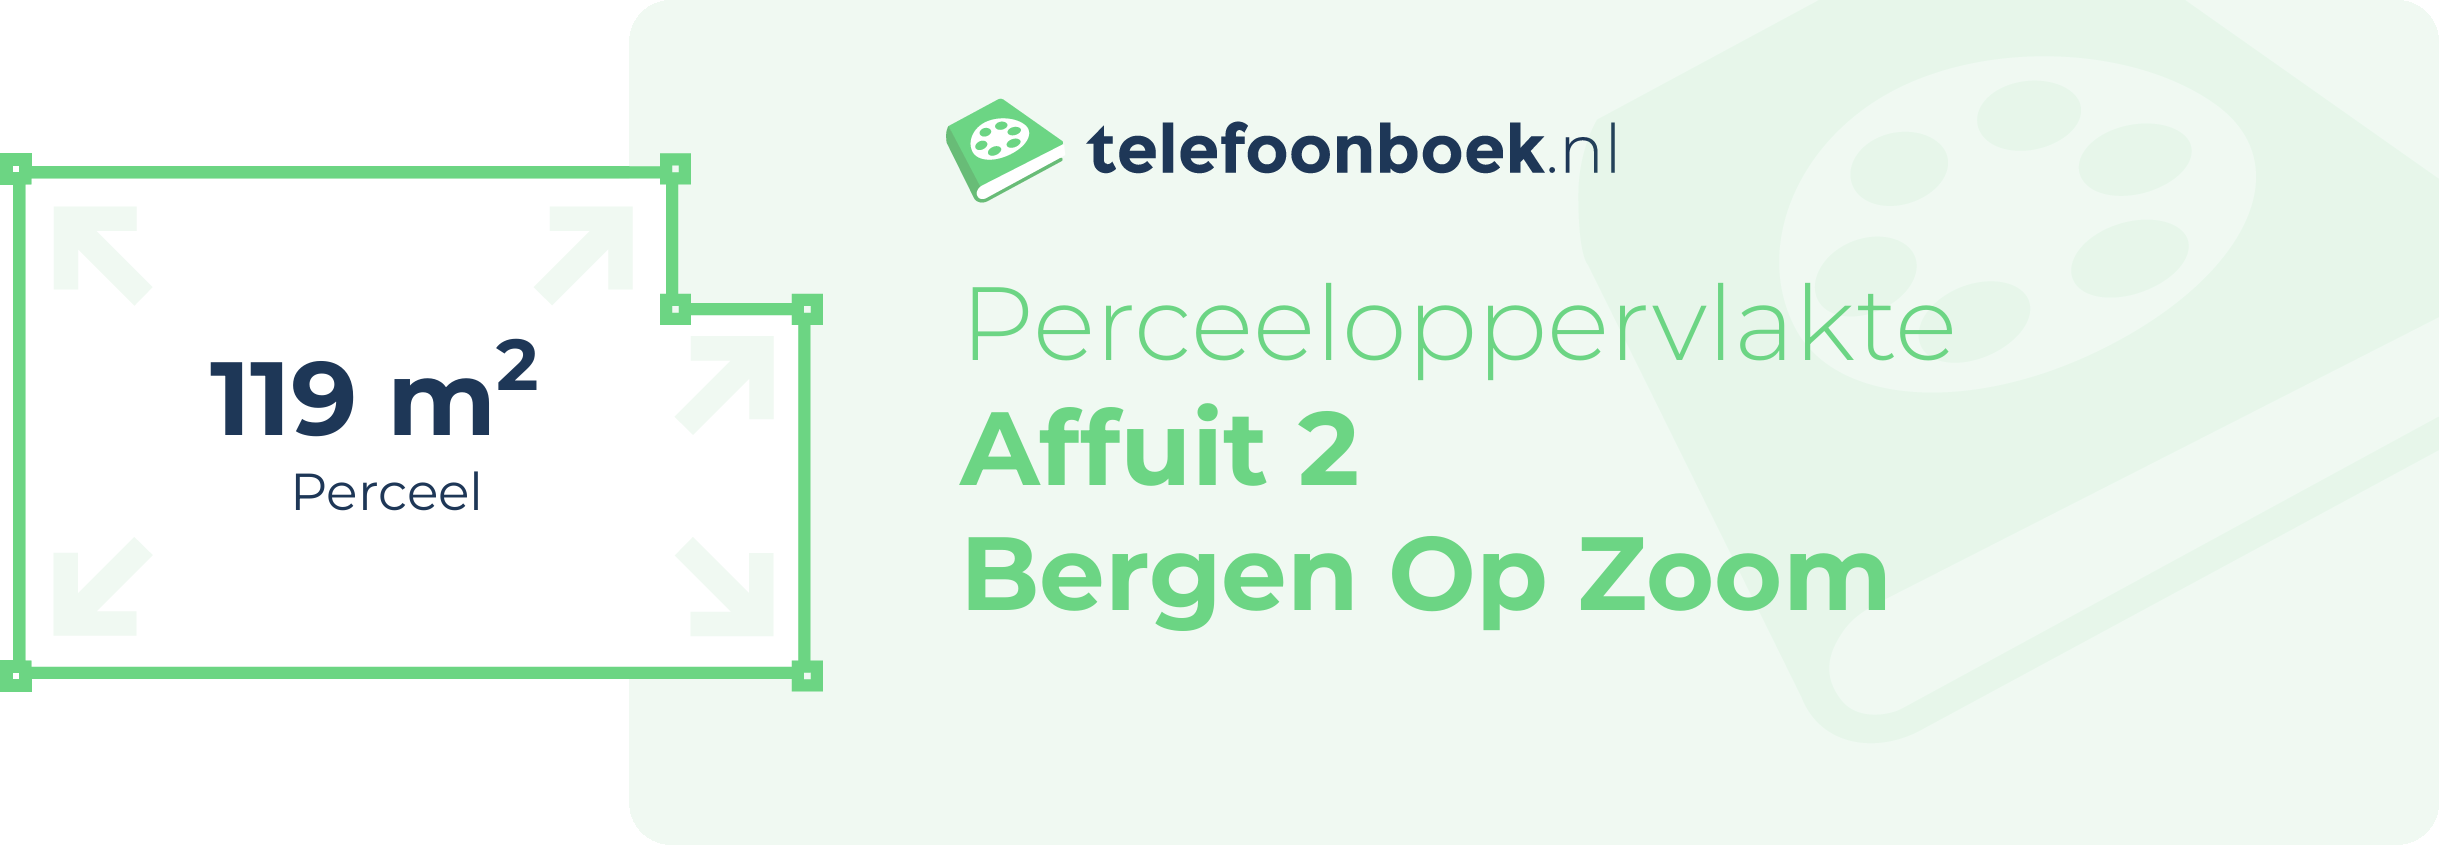 Perceeloppervlakte Affuit 2 Bergen Op Zoom